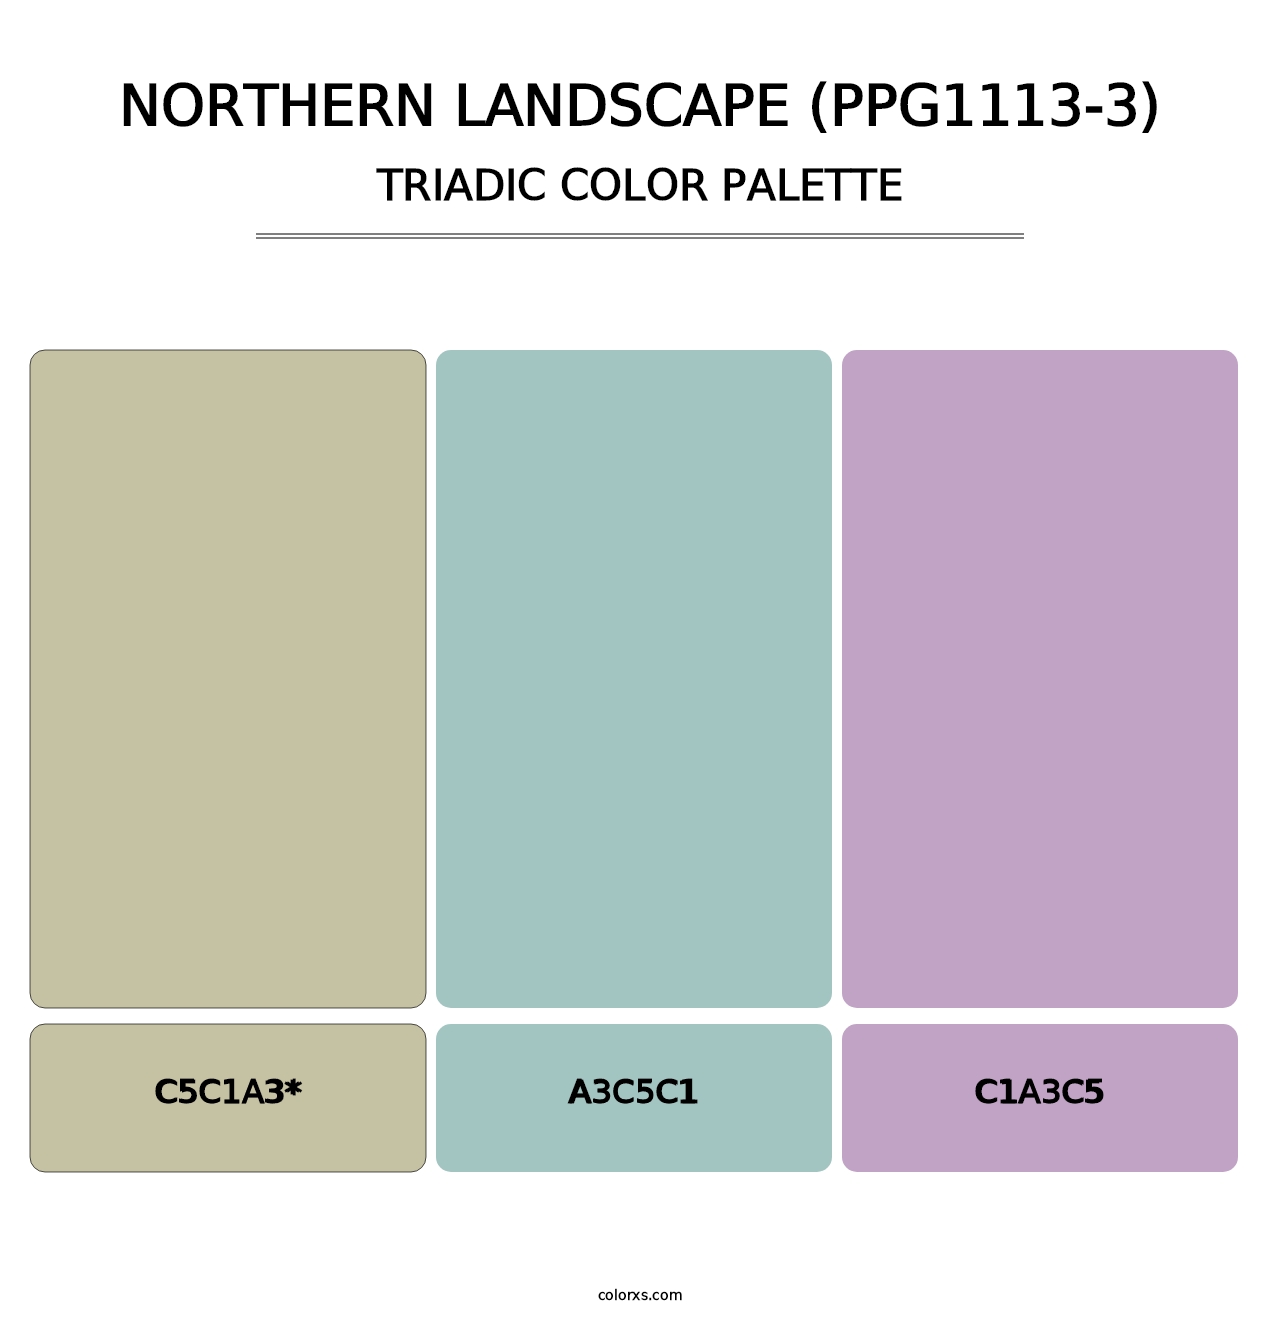 Northern Landscape (PPG1113-3) - Triadic Color Palette